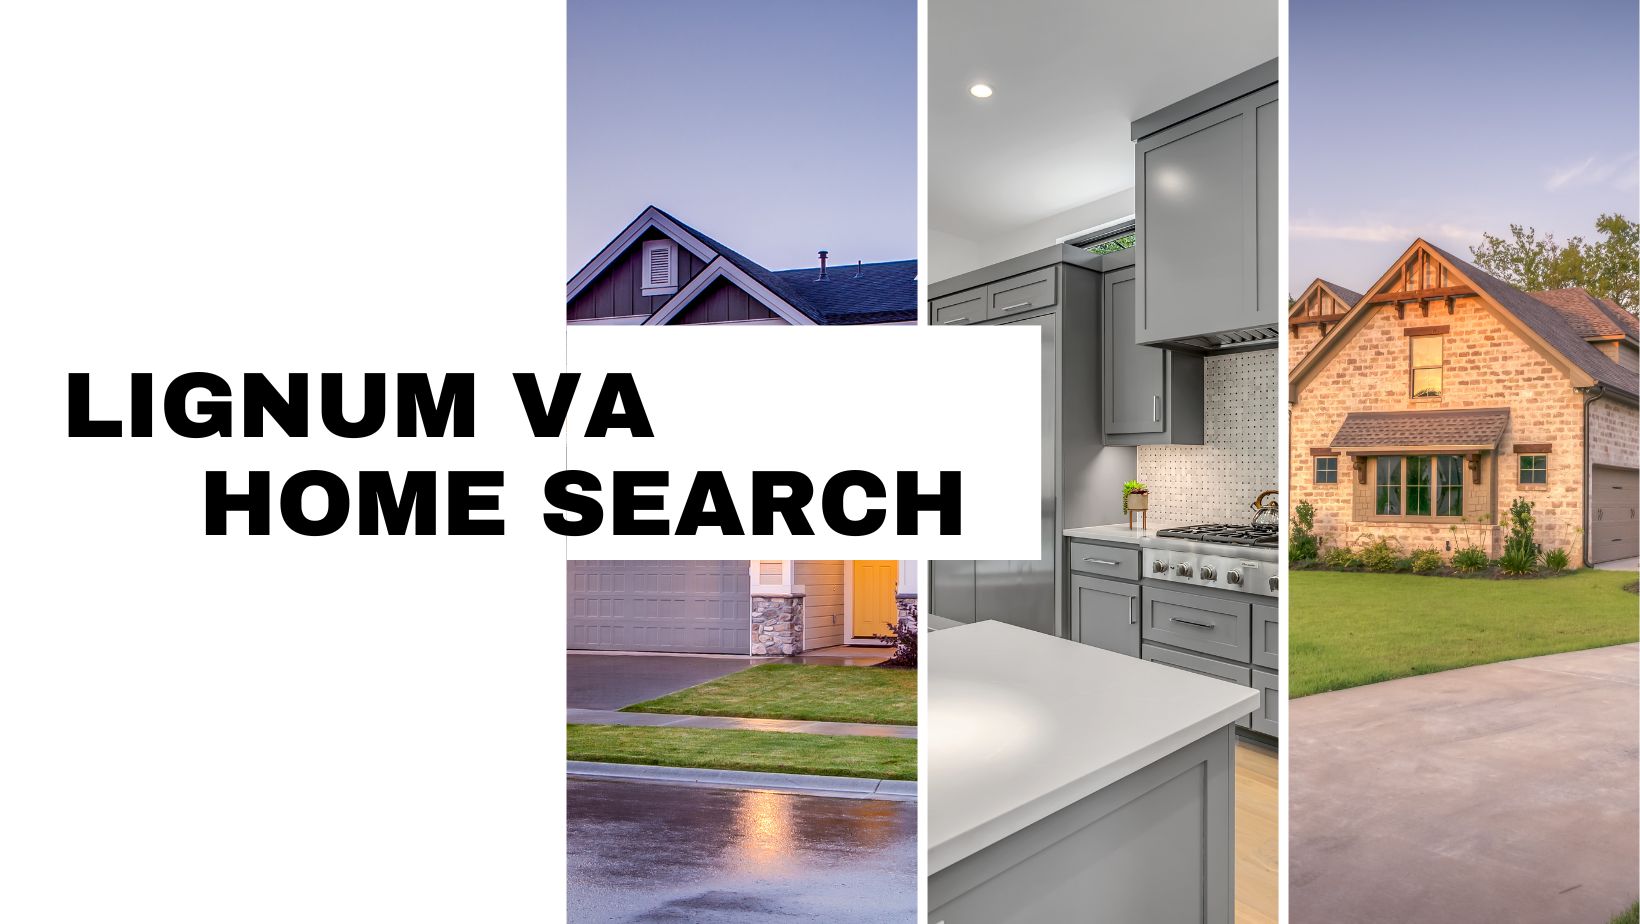 Lignum VA Homes for Sale